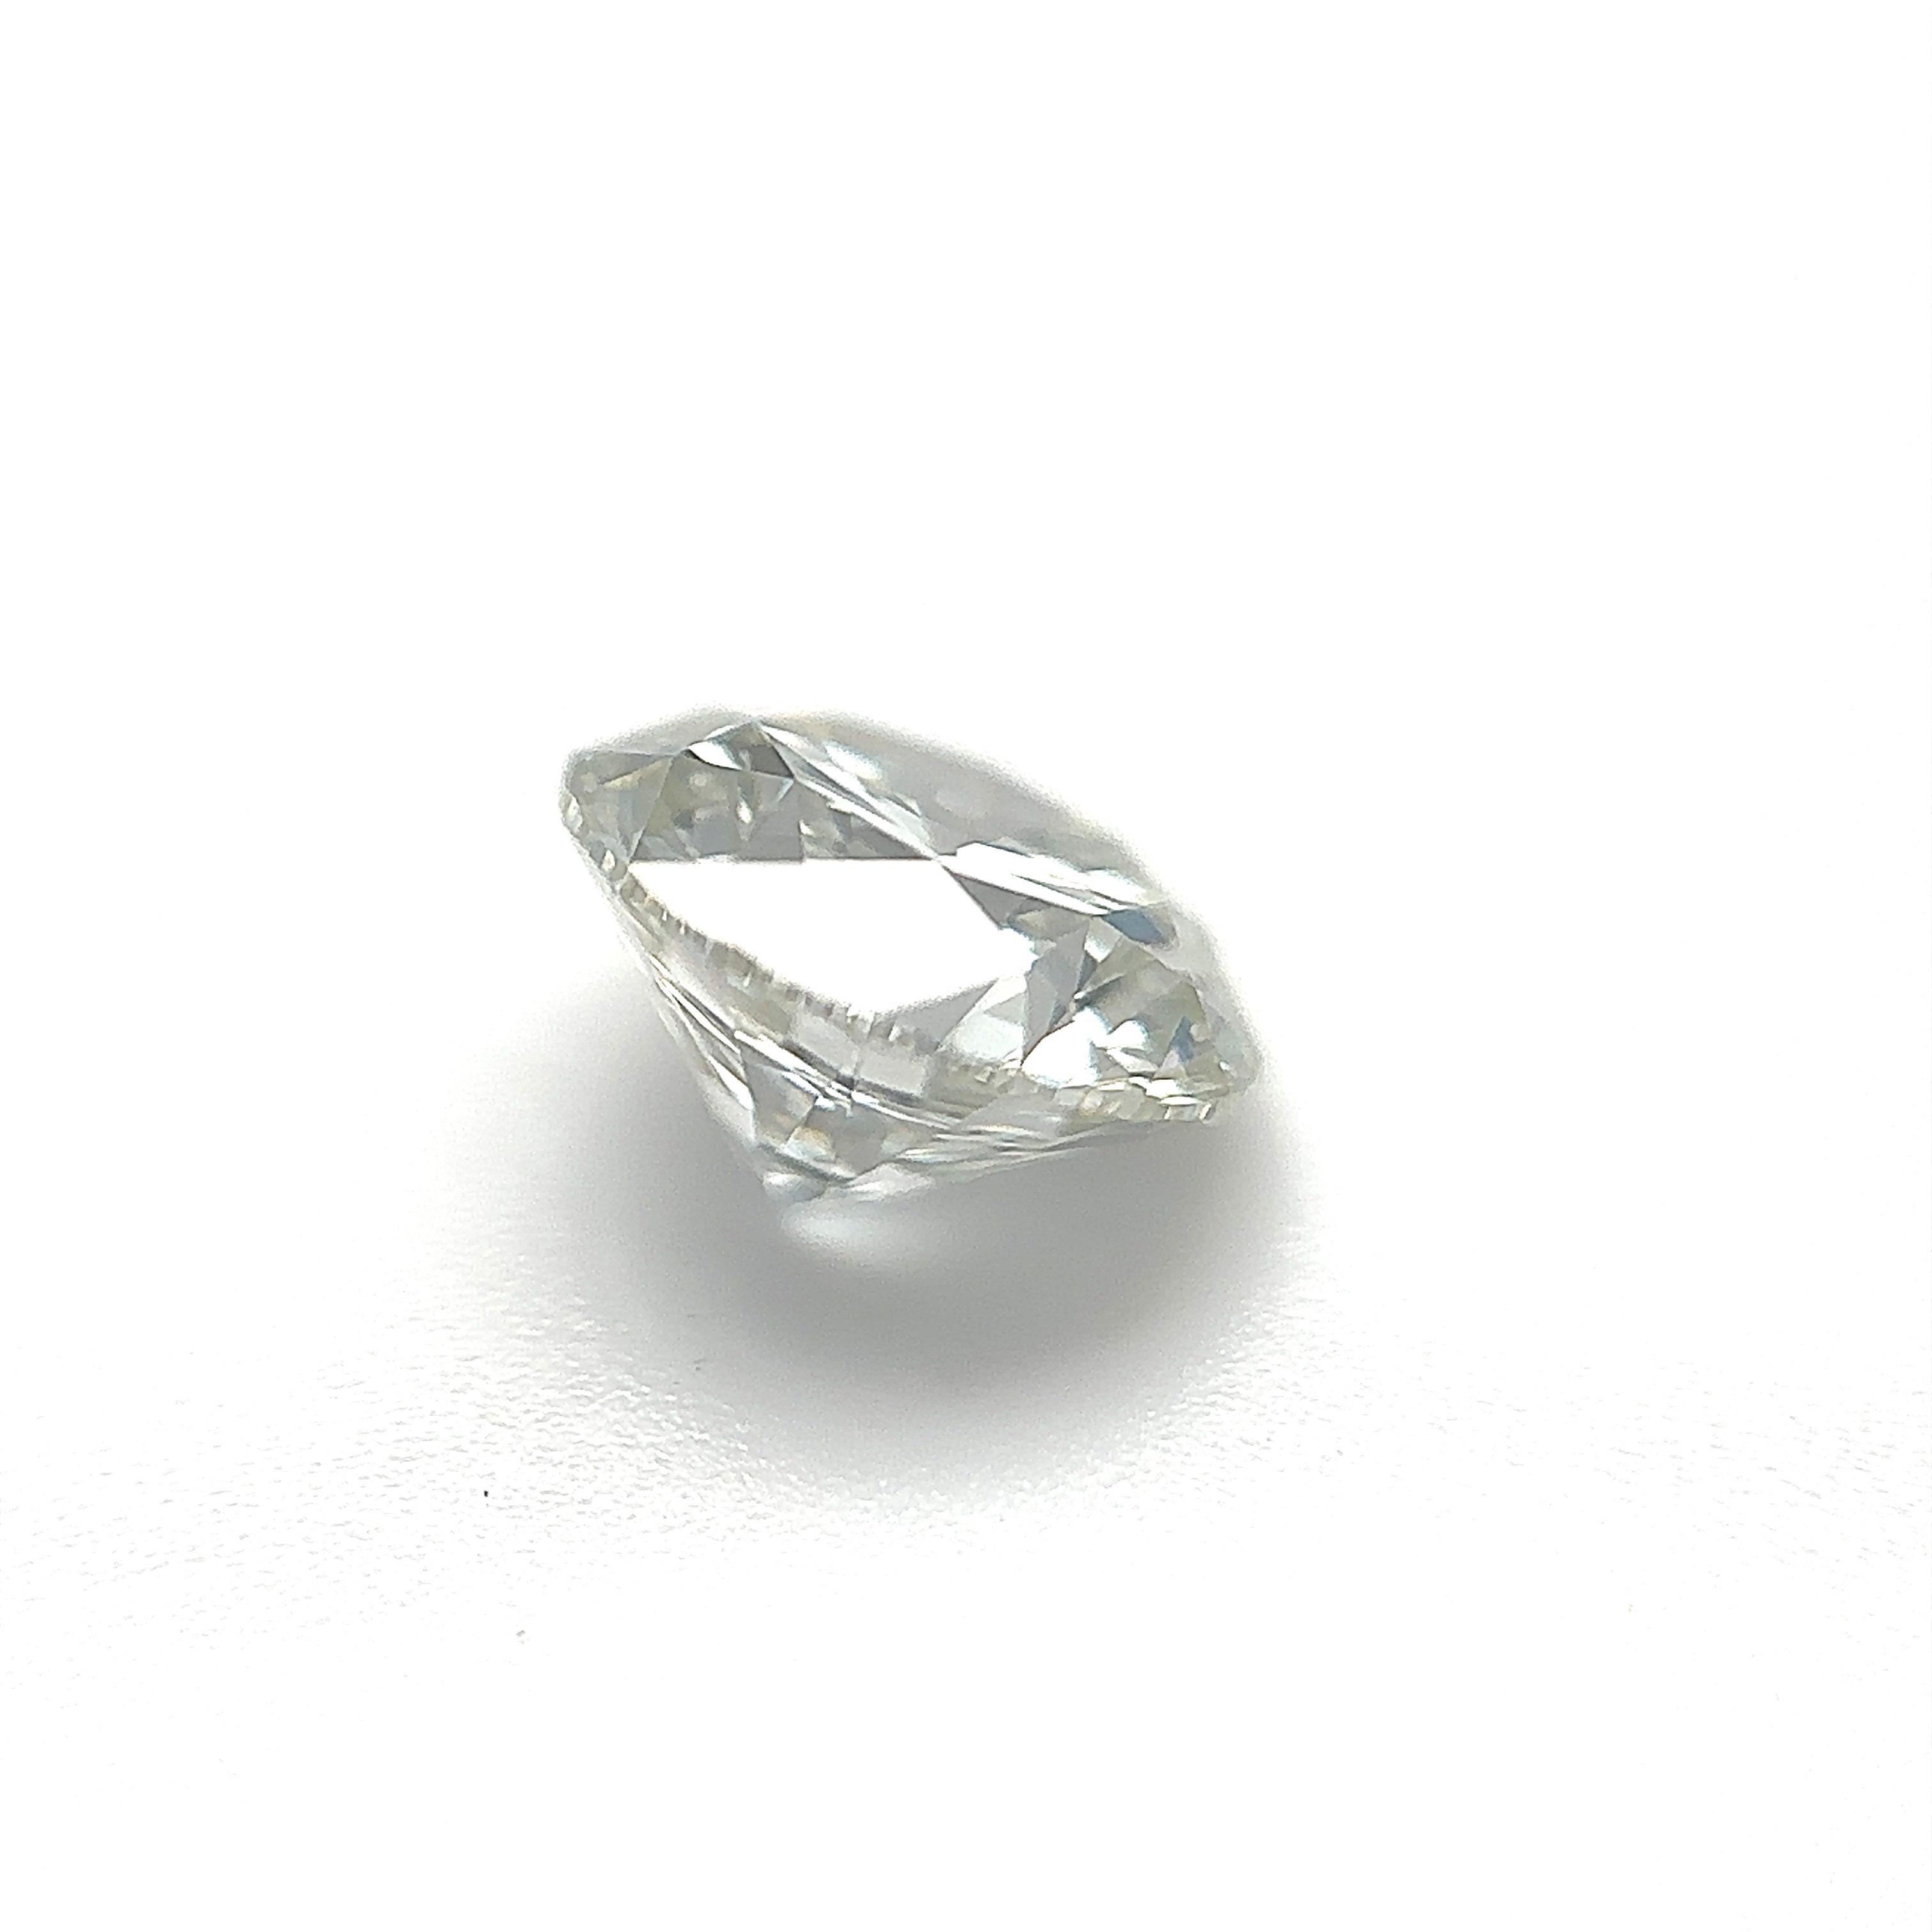 GIA-zertifizierter 1,30 Karat runder Brillant-Naturdiamant Lose Stein (Anpassungsoption)

Farbe: H
Klarheit: VS2

Ideal für Verlobungsringe, Eheringe, Diamant-Halsketten und Diamant-Ohrringe. Setzen Sie sich mit uns in Verbindung, um Ihren Schmuck